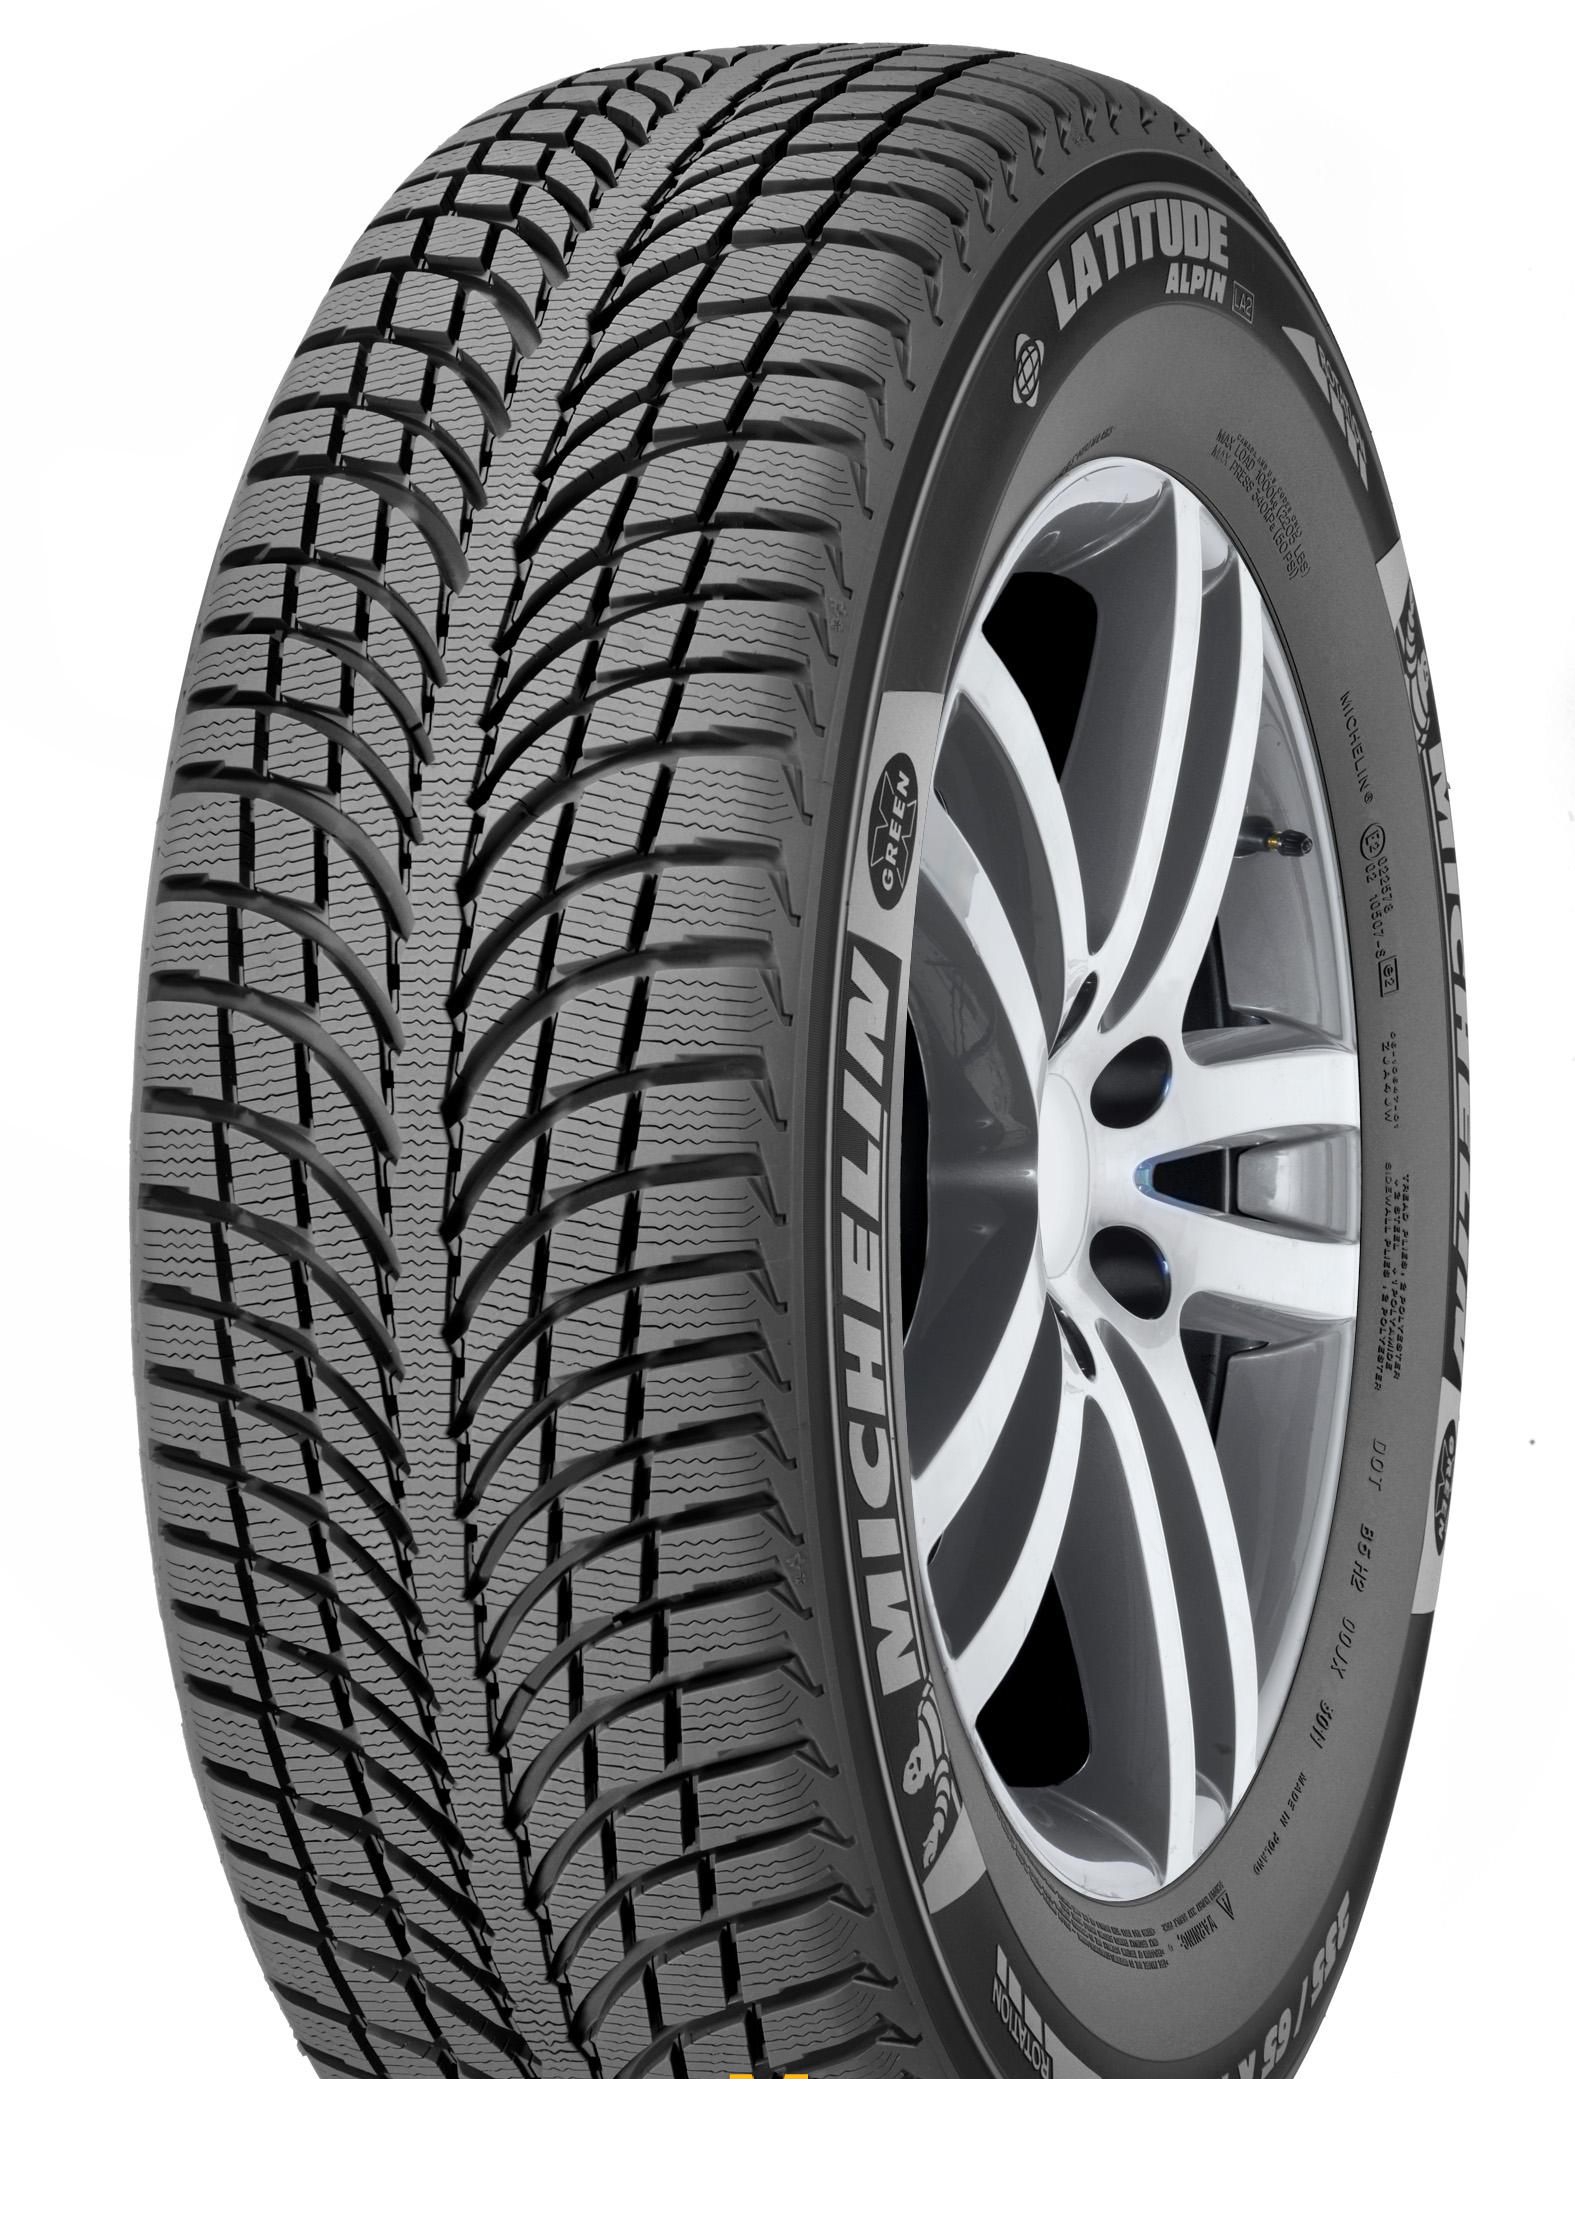 Tire Michelin Latitude Alpin 2 235/60R17 106H - picture, photo, image